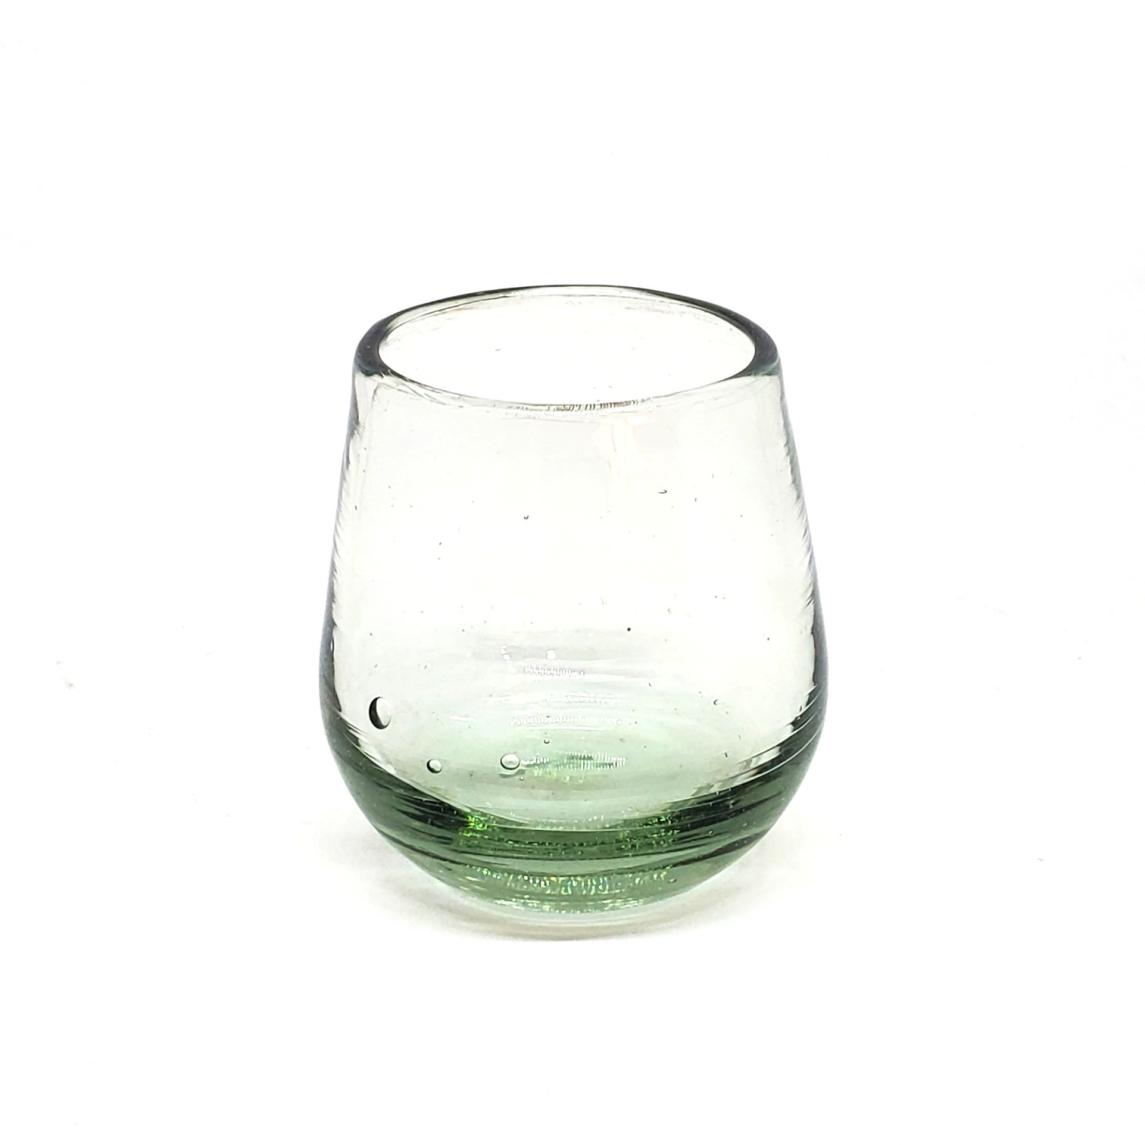 Ofertas / Poly Transparente (Juego de 6) / Nuestros vasos transparentes son fabricados uno por uno a base de vidrio reciclado, haciéndolos obras de arte únicas.